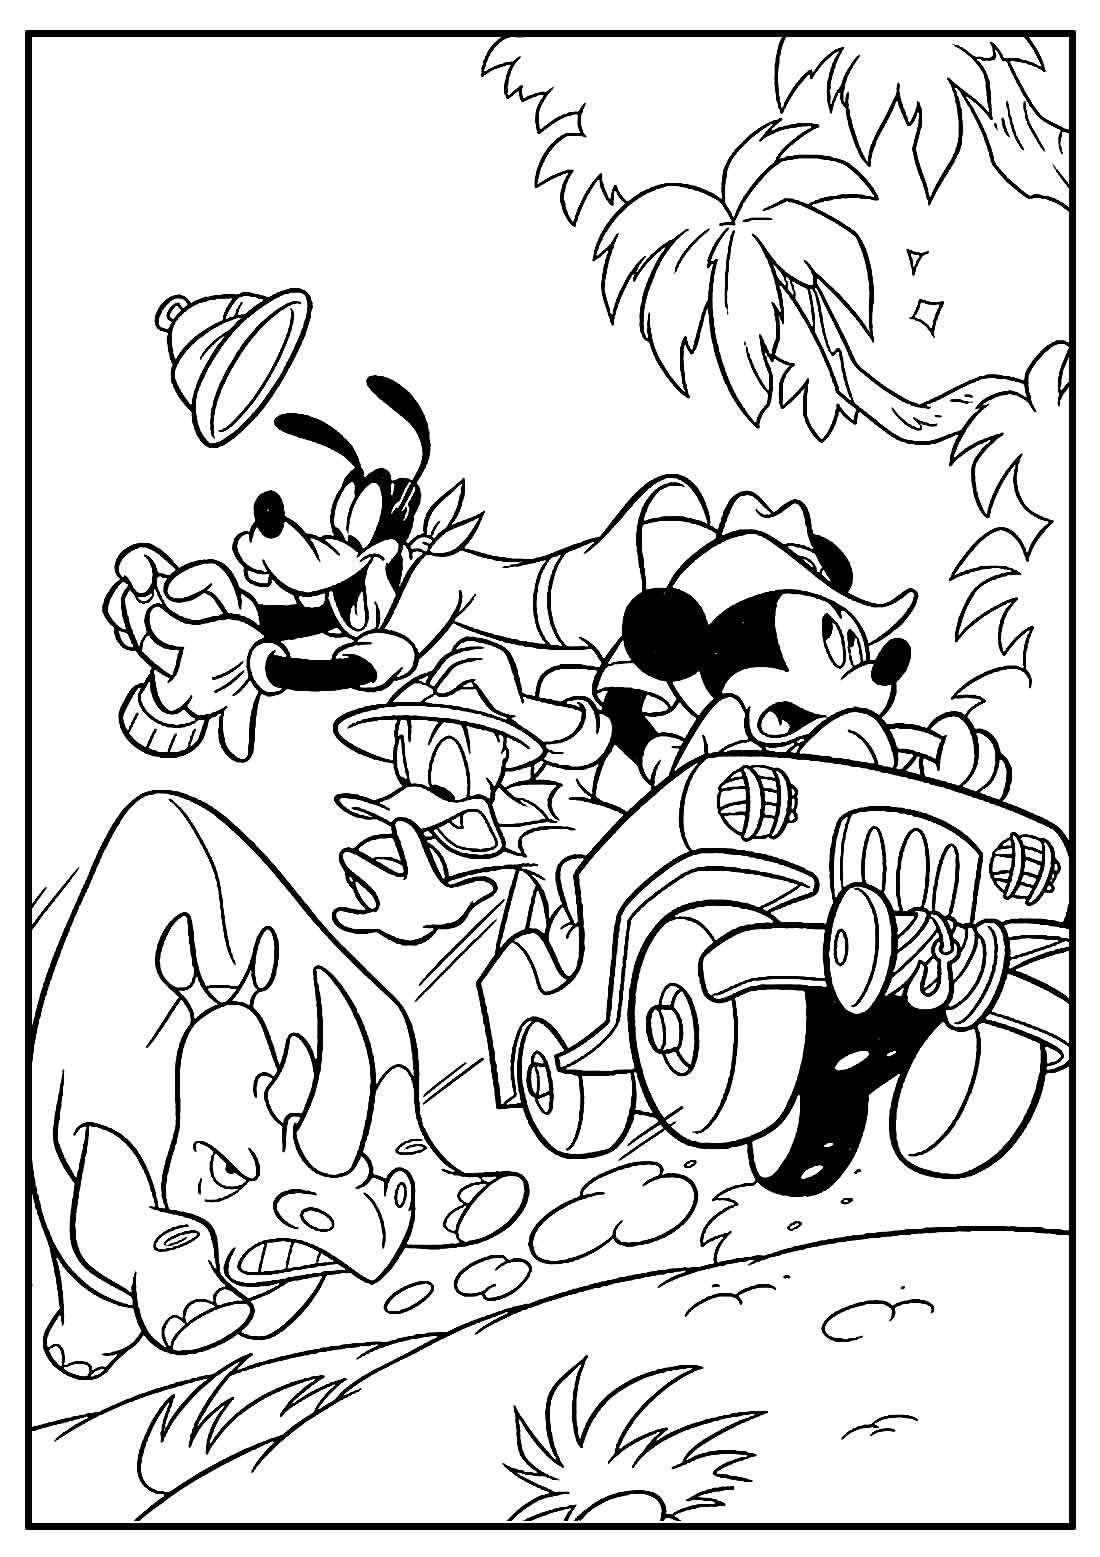 Página para colorir do Mickey